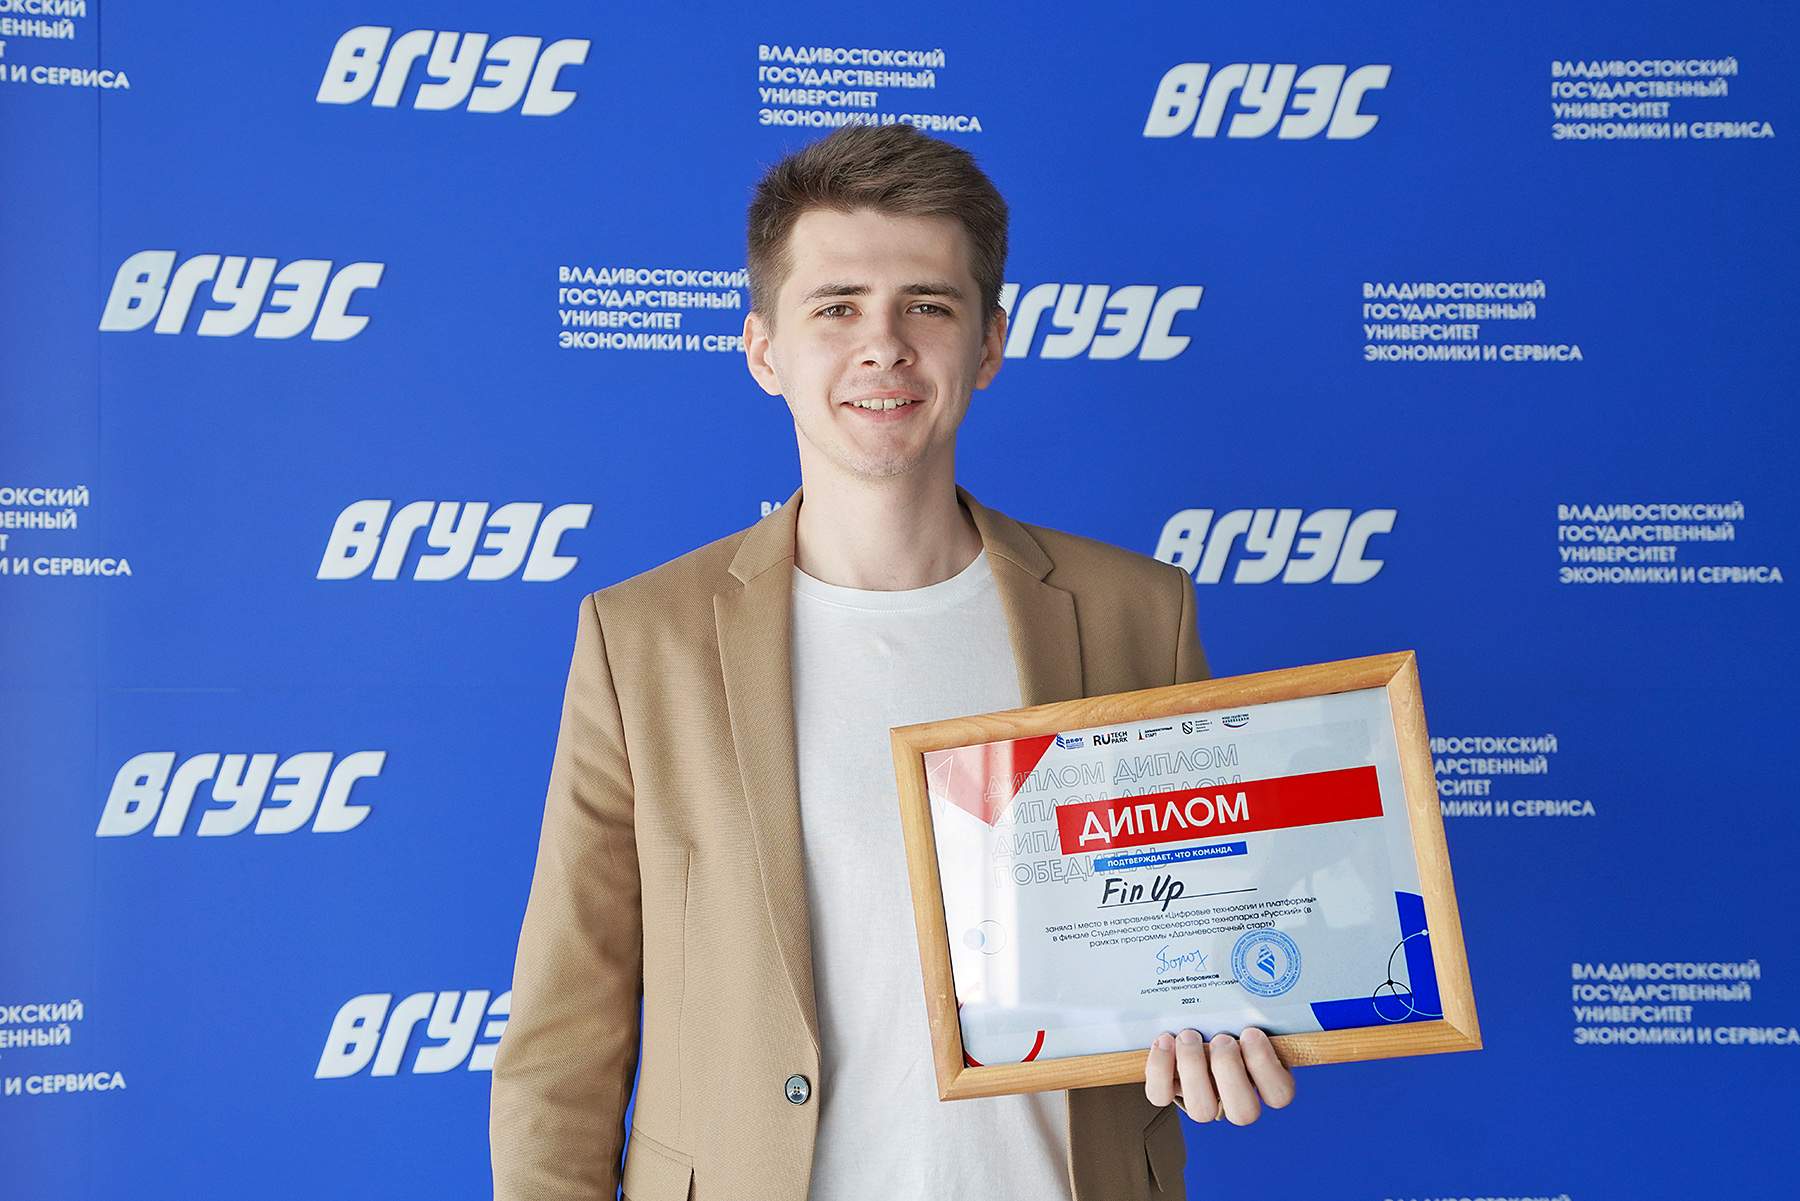 Цифровой стартап магистранта ВГУЭС победил в студенческом акселераторе